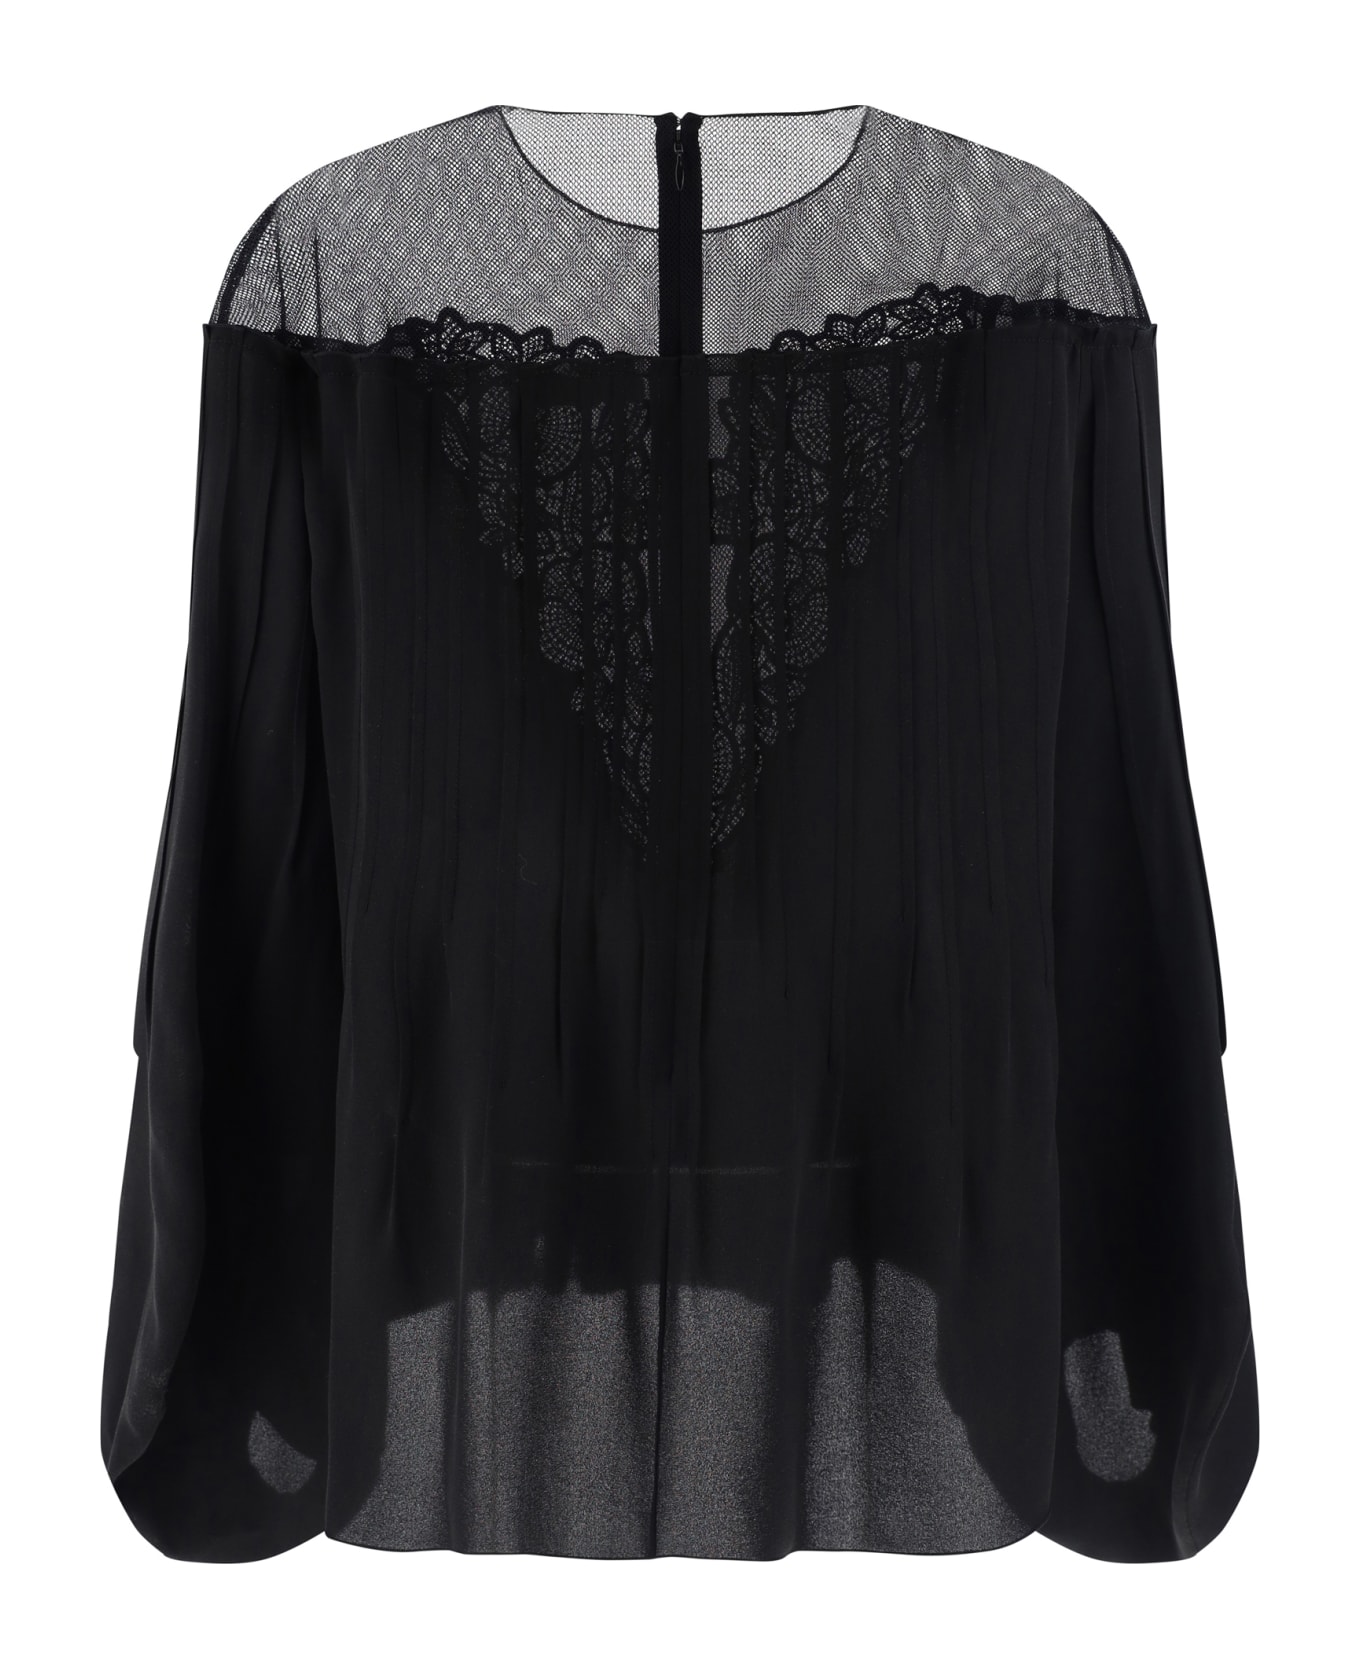 Chloé Blusa Shirt - Black